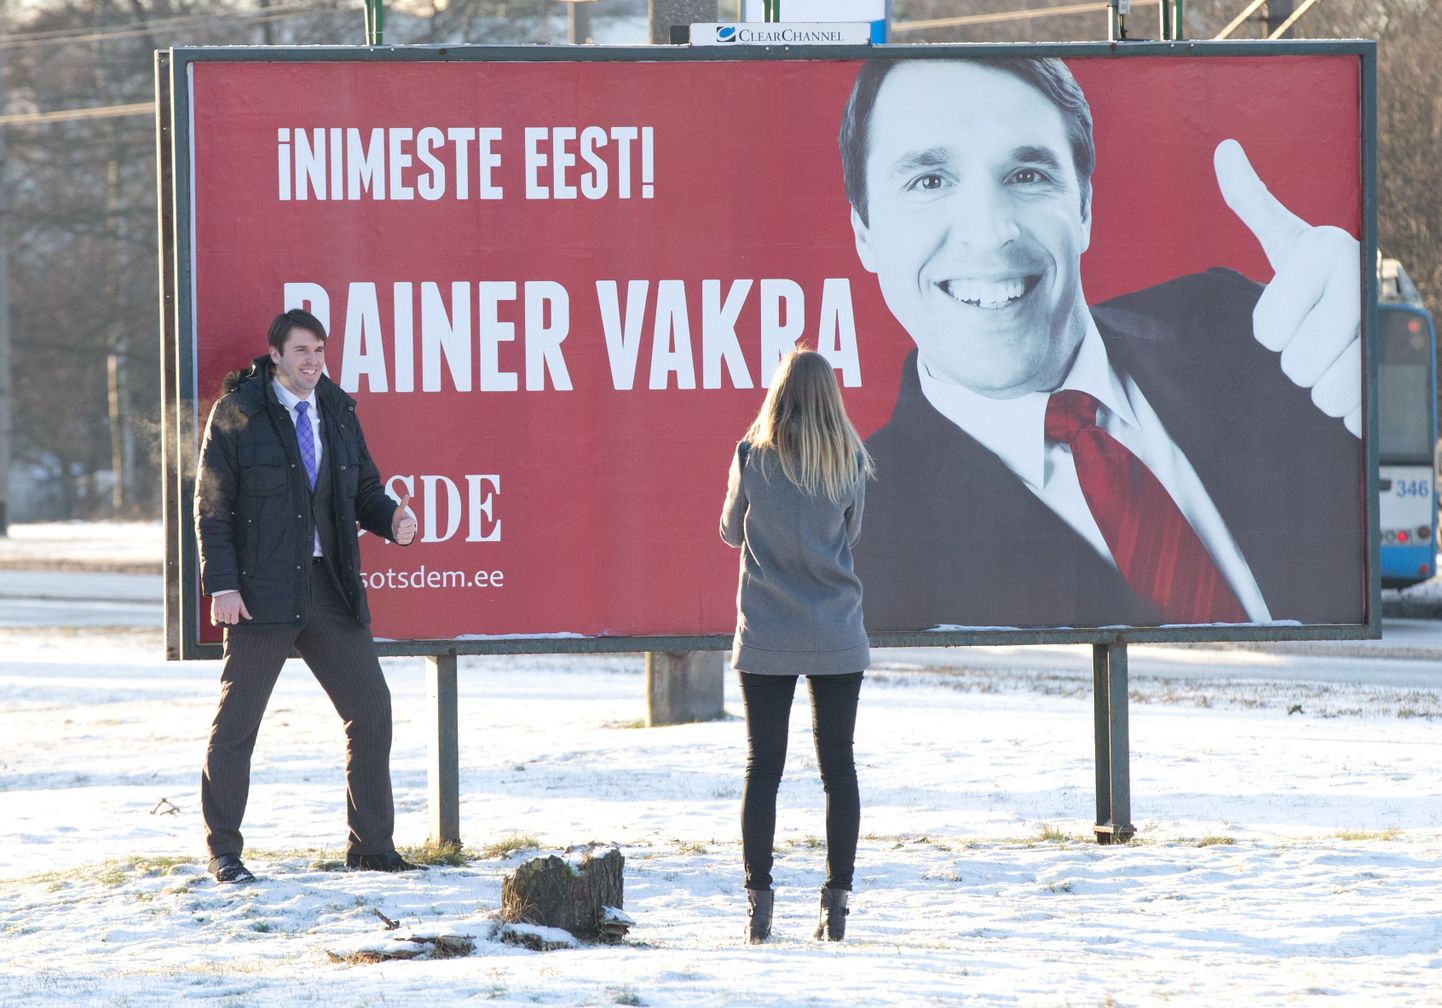 Rainer Vakra oma valmiskampaania plakati ees Sõpruse puiesteel.